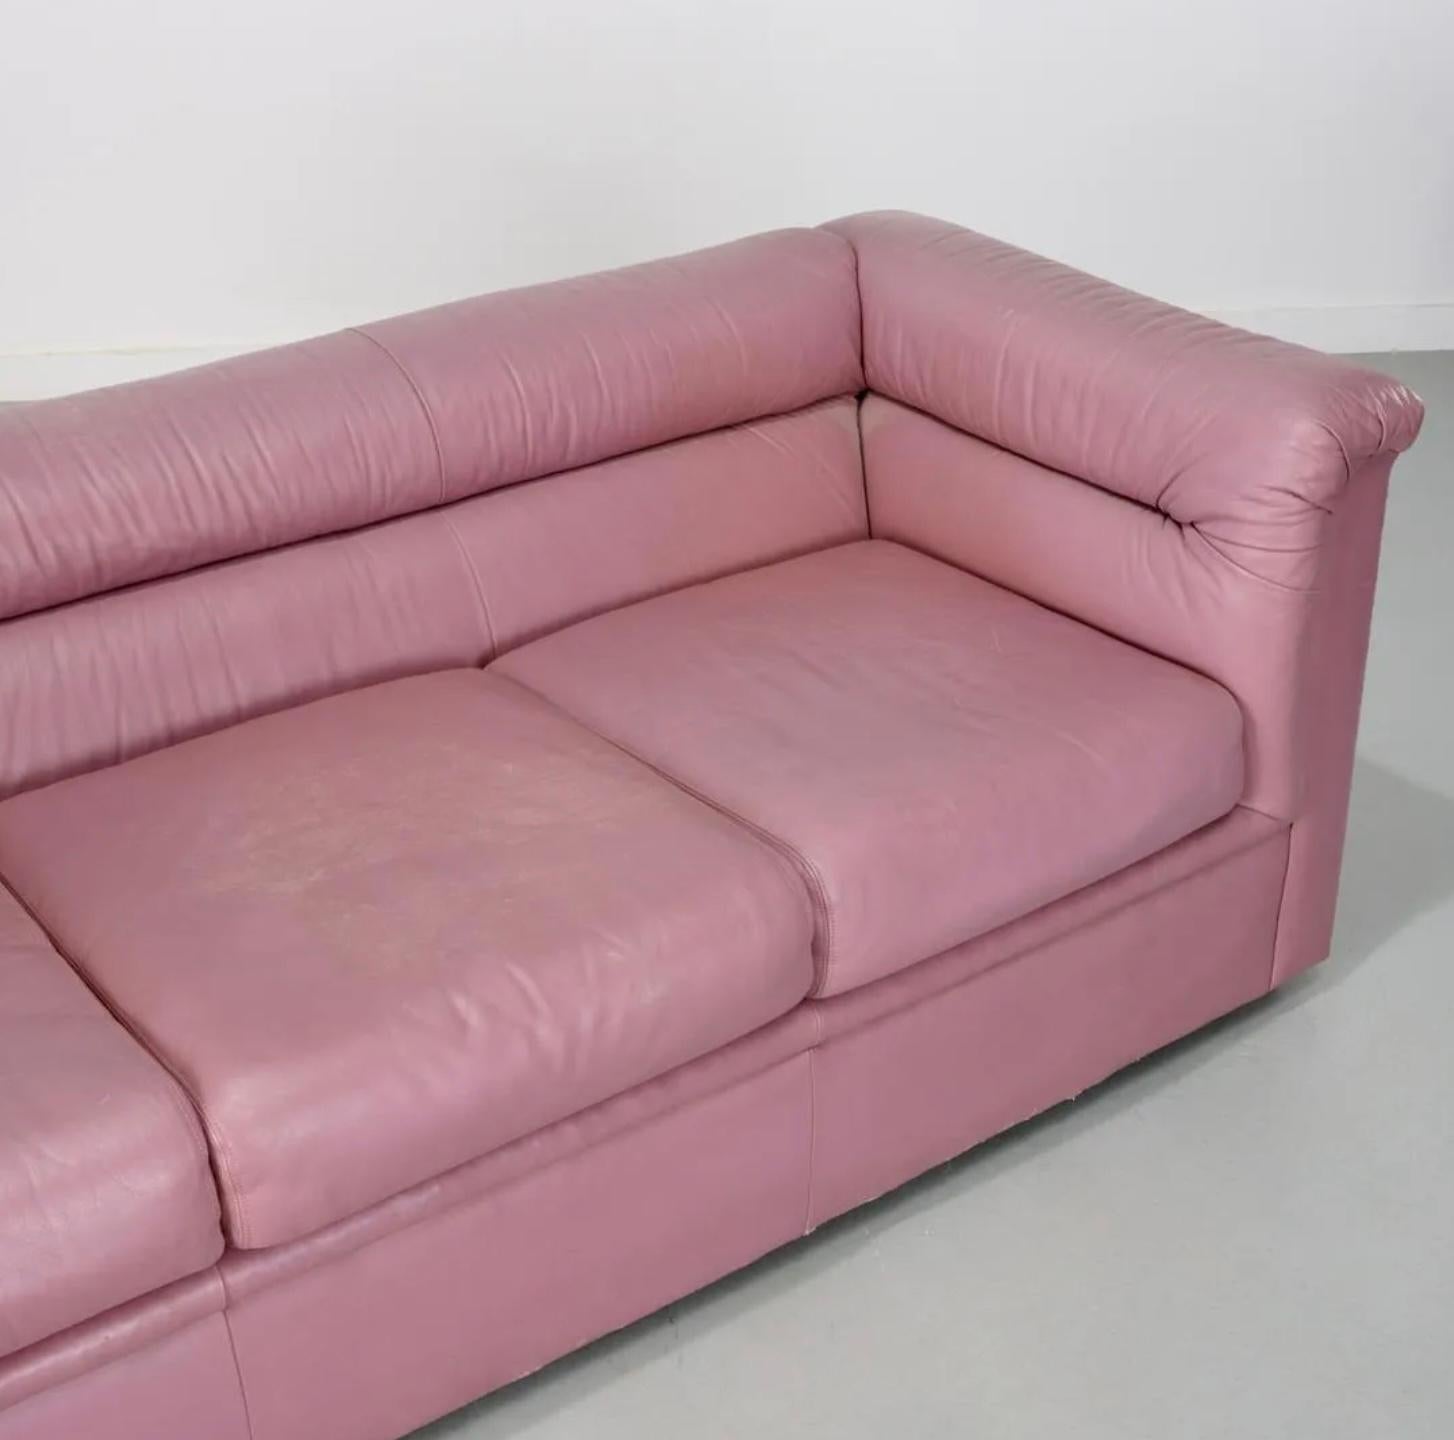 Sauberes postmodernes 3-sitziges rosa Ledersofa aus der Jahrhundertmitte um 1980 von Selig. Dieses Sofa ist eine Zeitkapsel aus den 1980er/1990er Jahren mit geschwollenen Seitenarmen und Rückenkissen sowie 3 unteren Kissen. Das Sofa ist ganz